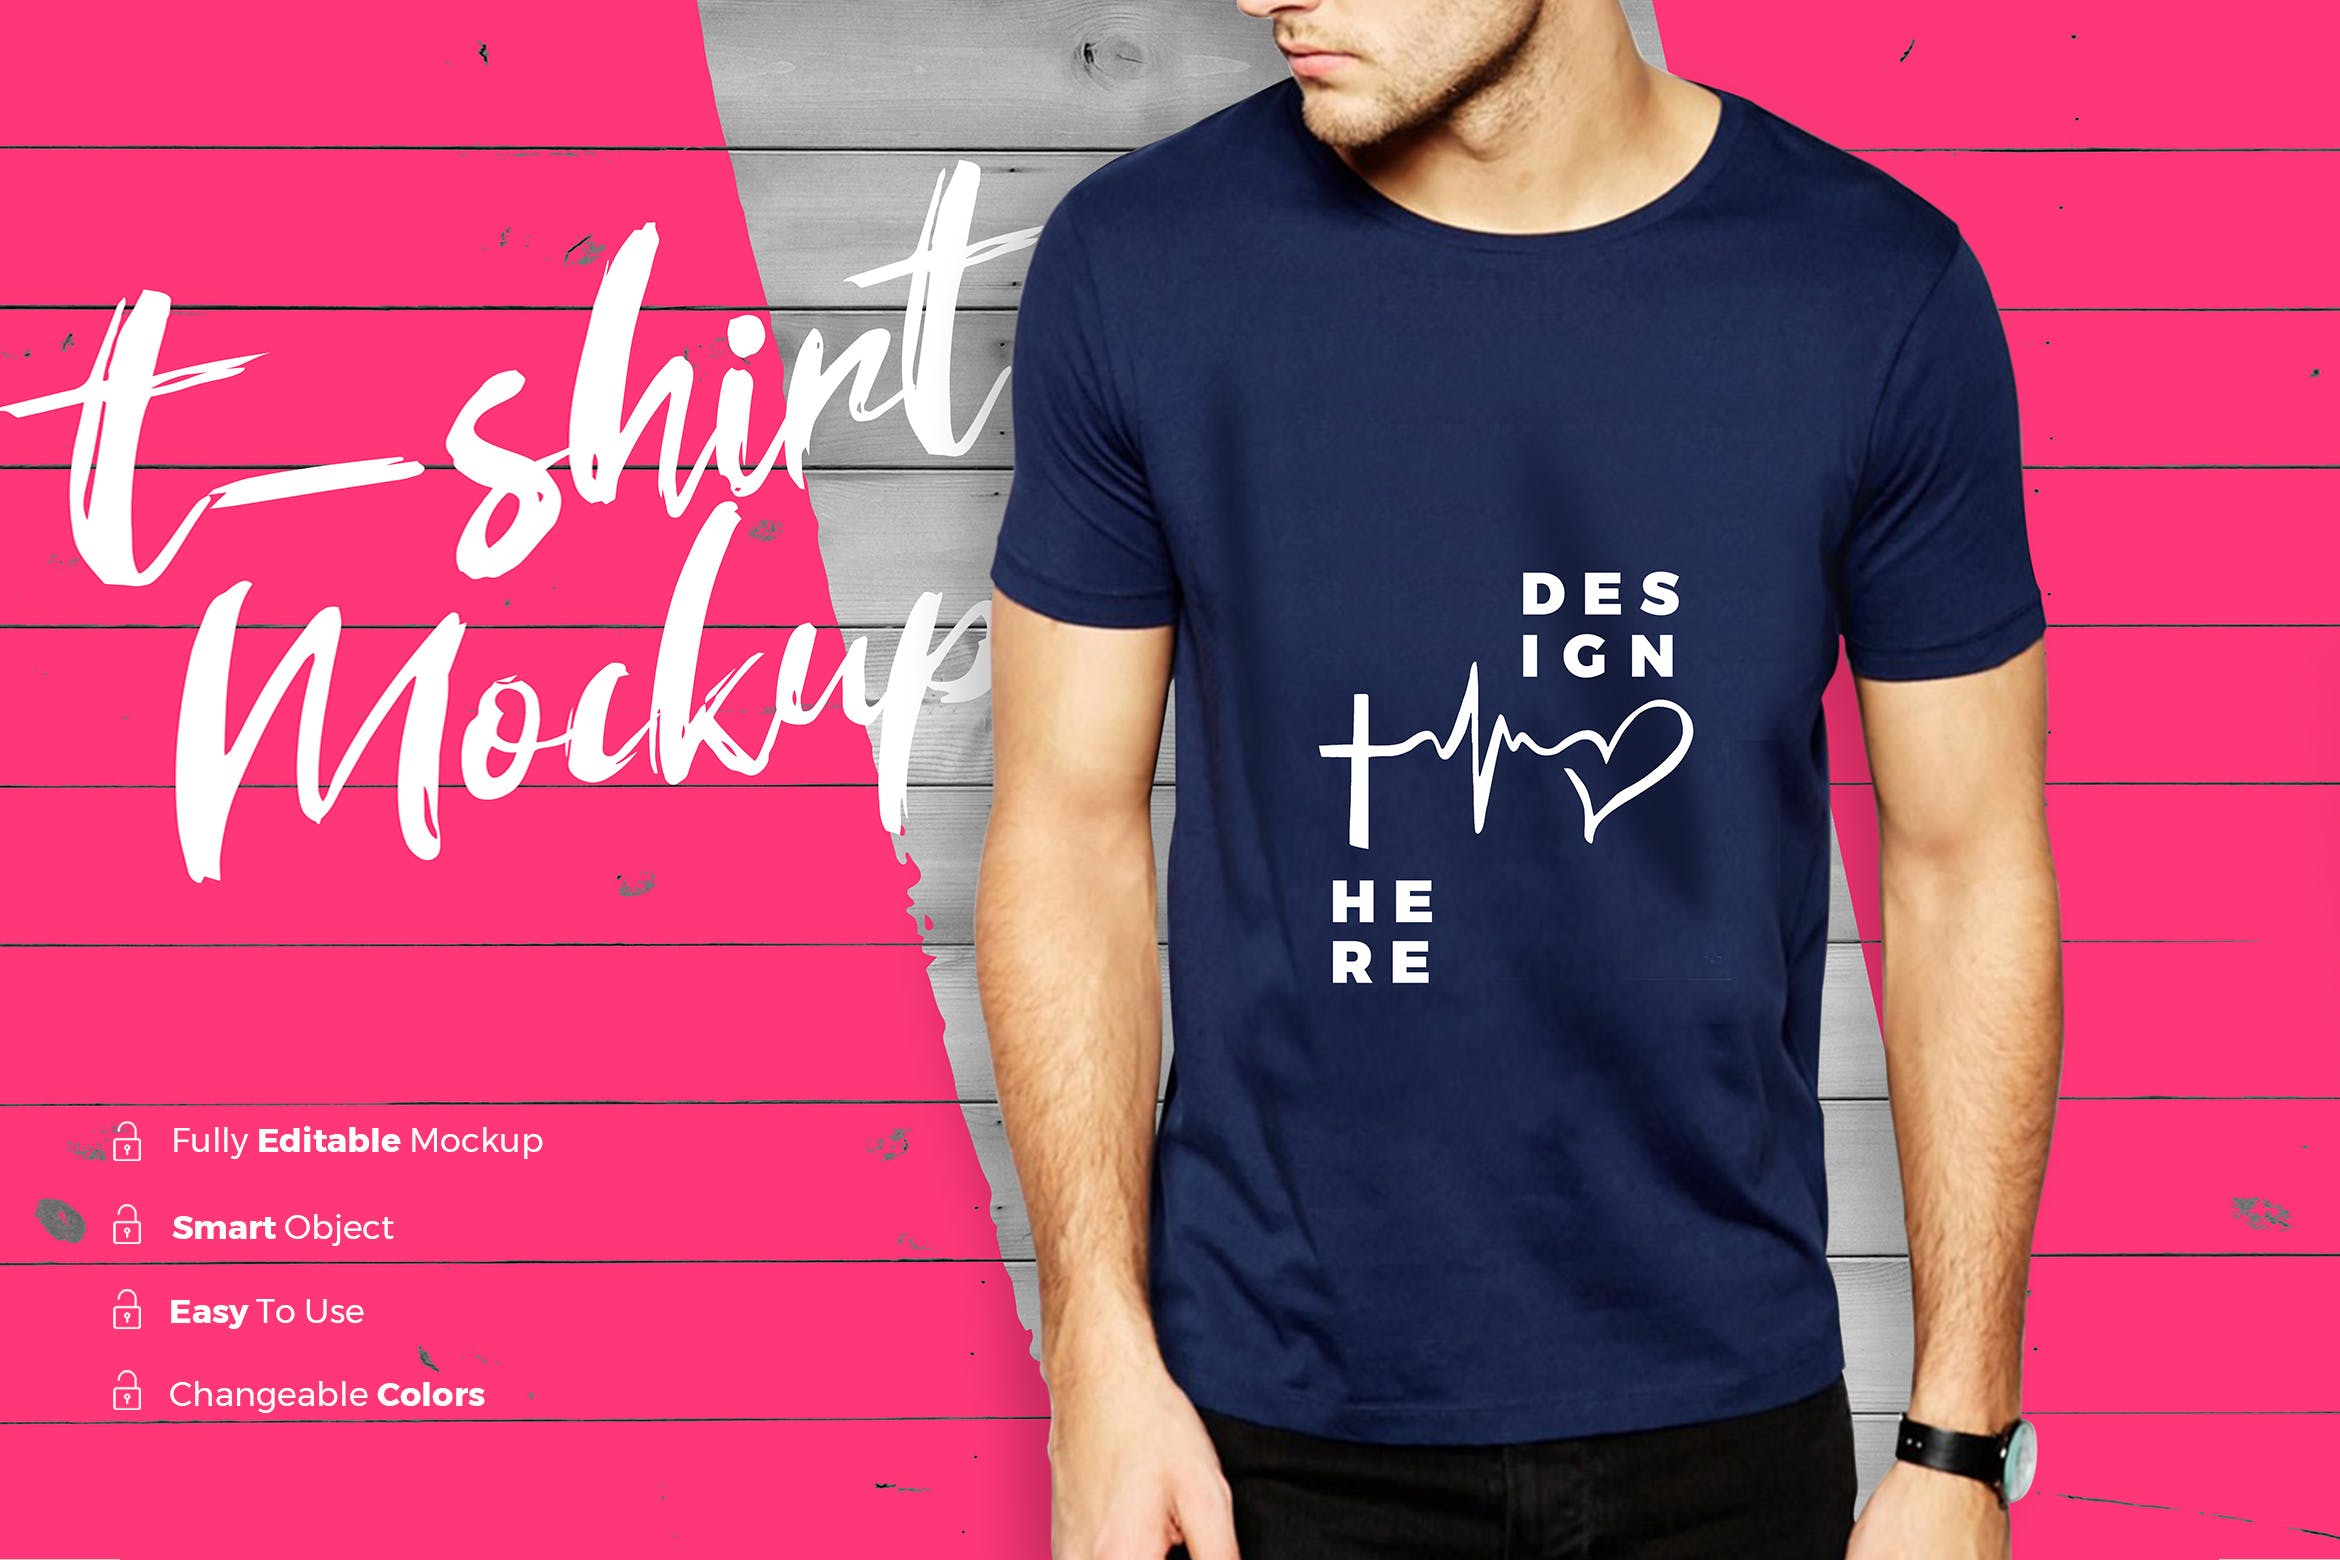 男士潮流时尚T恤印花图案设计展示样机素材库精选 TShirt Mockup插图